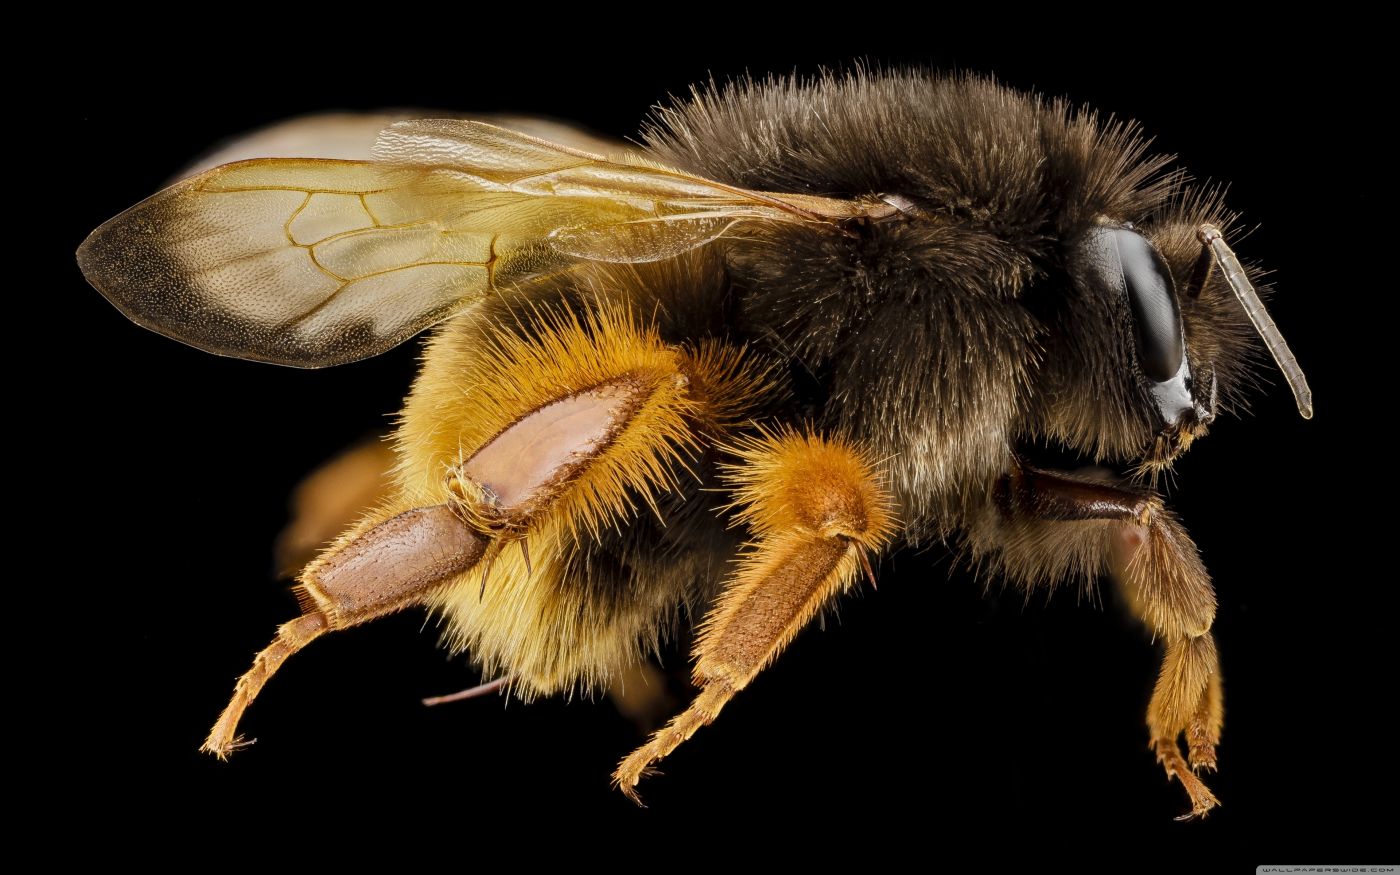 欧洲在巢的大黄蜂大黄蜂类crabro保卫的孔 库存图片. 图片 包括有 保卫, 爬行, 进入, 保护, 幼虫 - 103064643